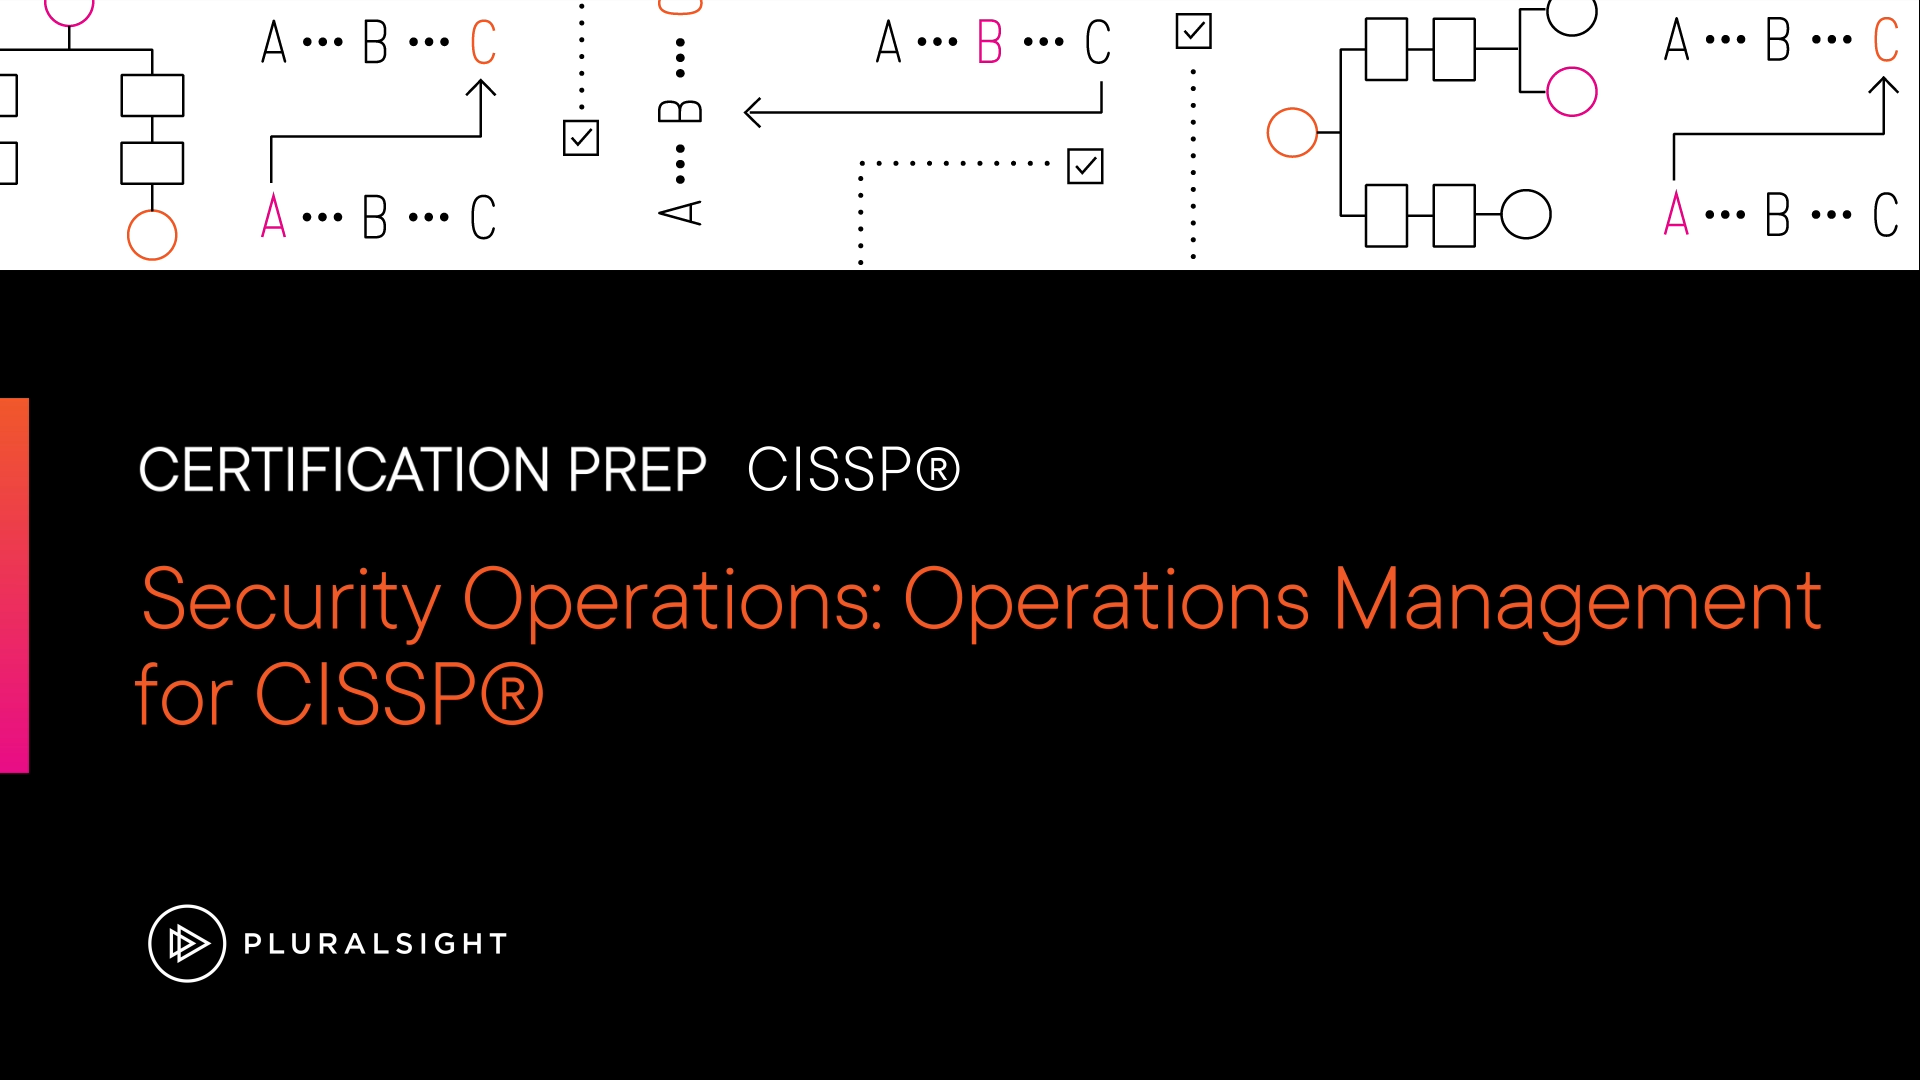 آموزش عملیات امنیتی: مدیریت عملیات برای CISSP®